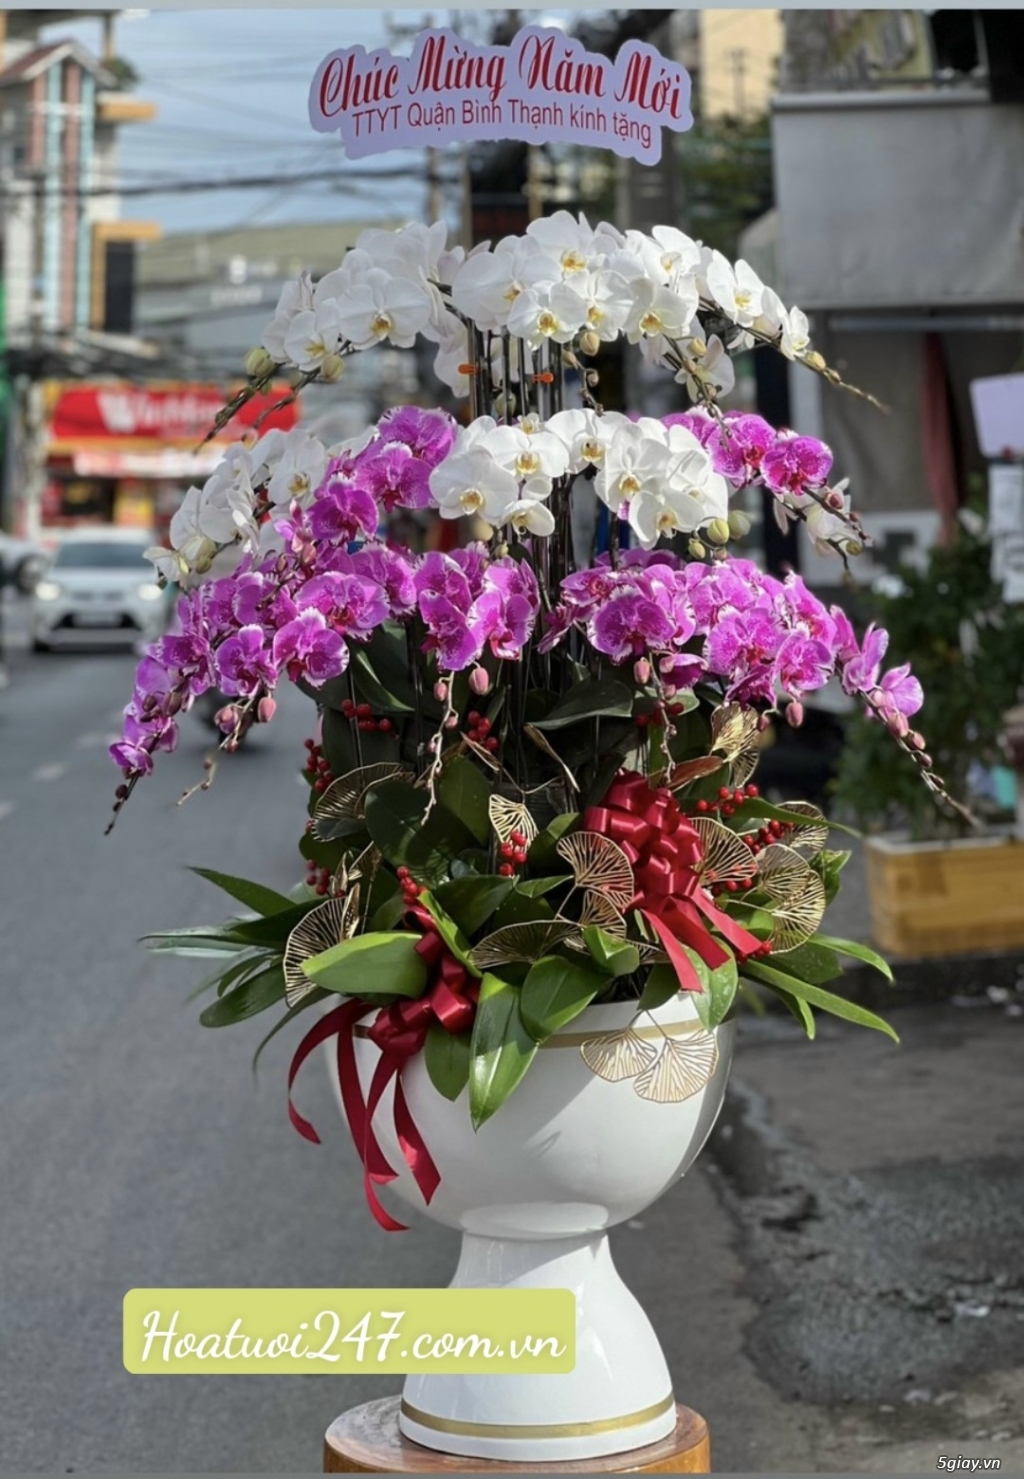 Đặt mua hoa lan cao cấp nhất tphcm tại Shop Lan Hồ Điệp 247 - 20